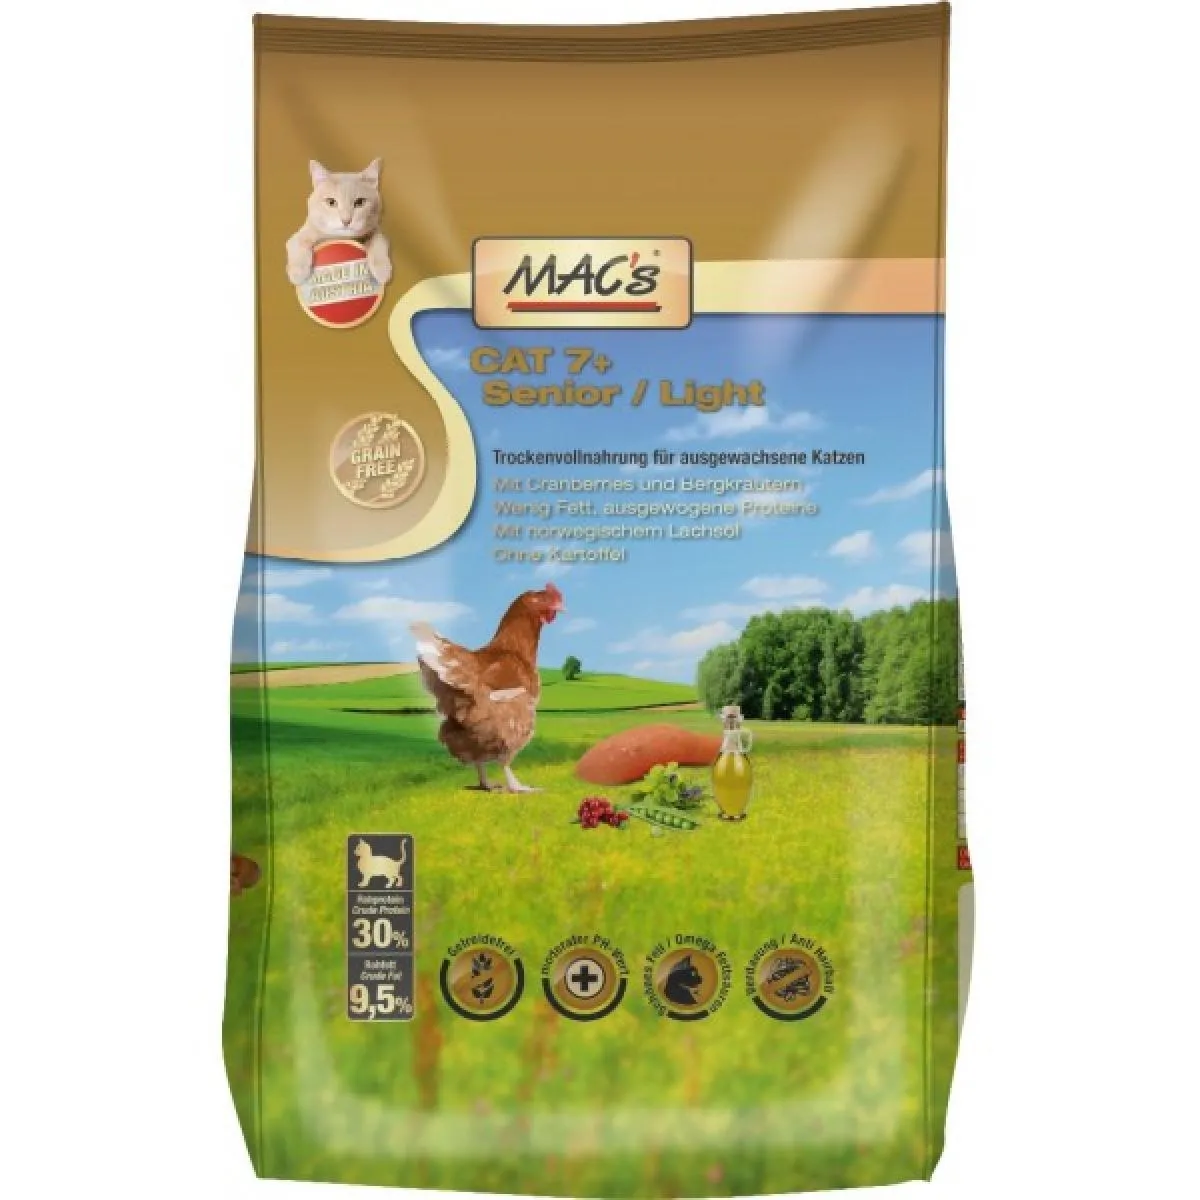 Mac’s 7+ Senior Chicken/ Light - Супер премиум суха храна за котки над 7 годишна възраст, без зърно , с пилешко месо ,червена боровинка и картофи 1.5 кг.